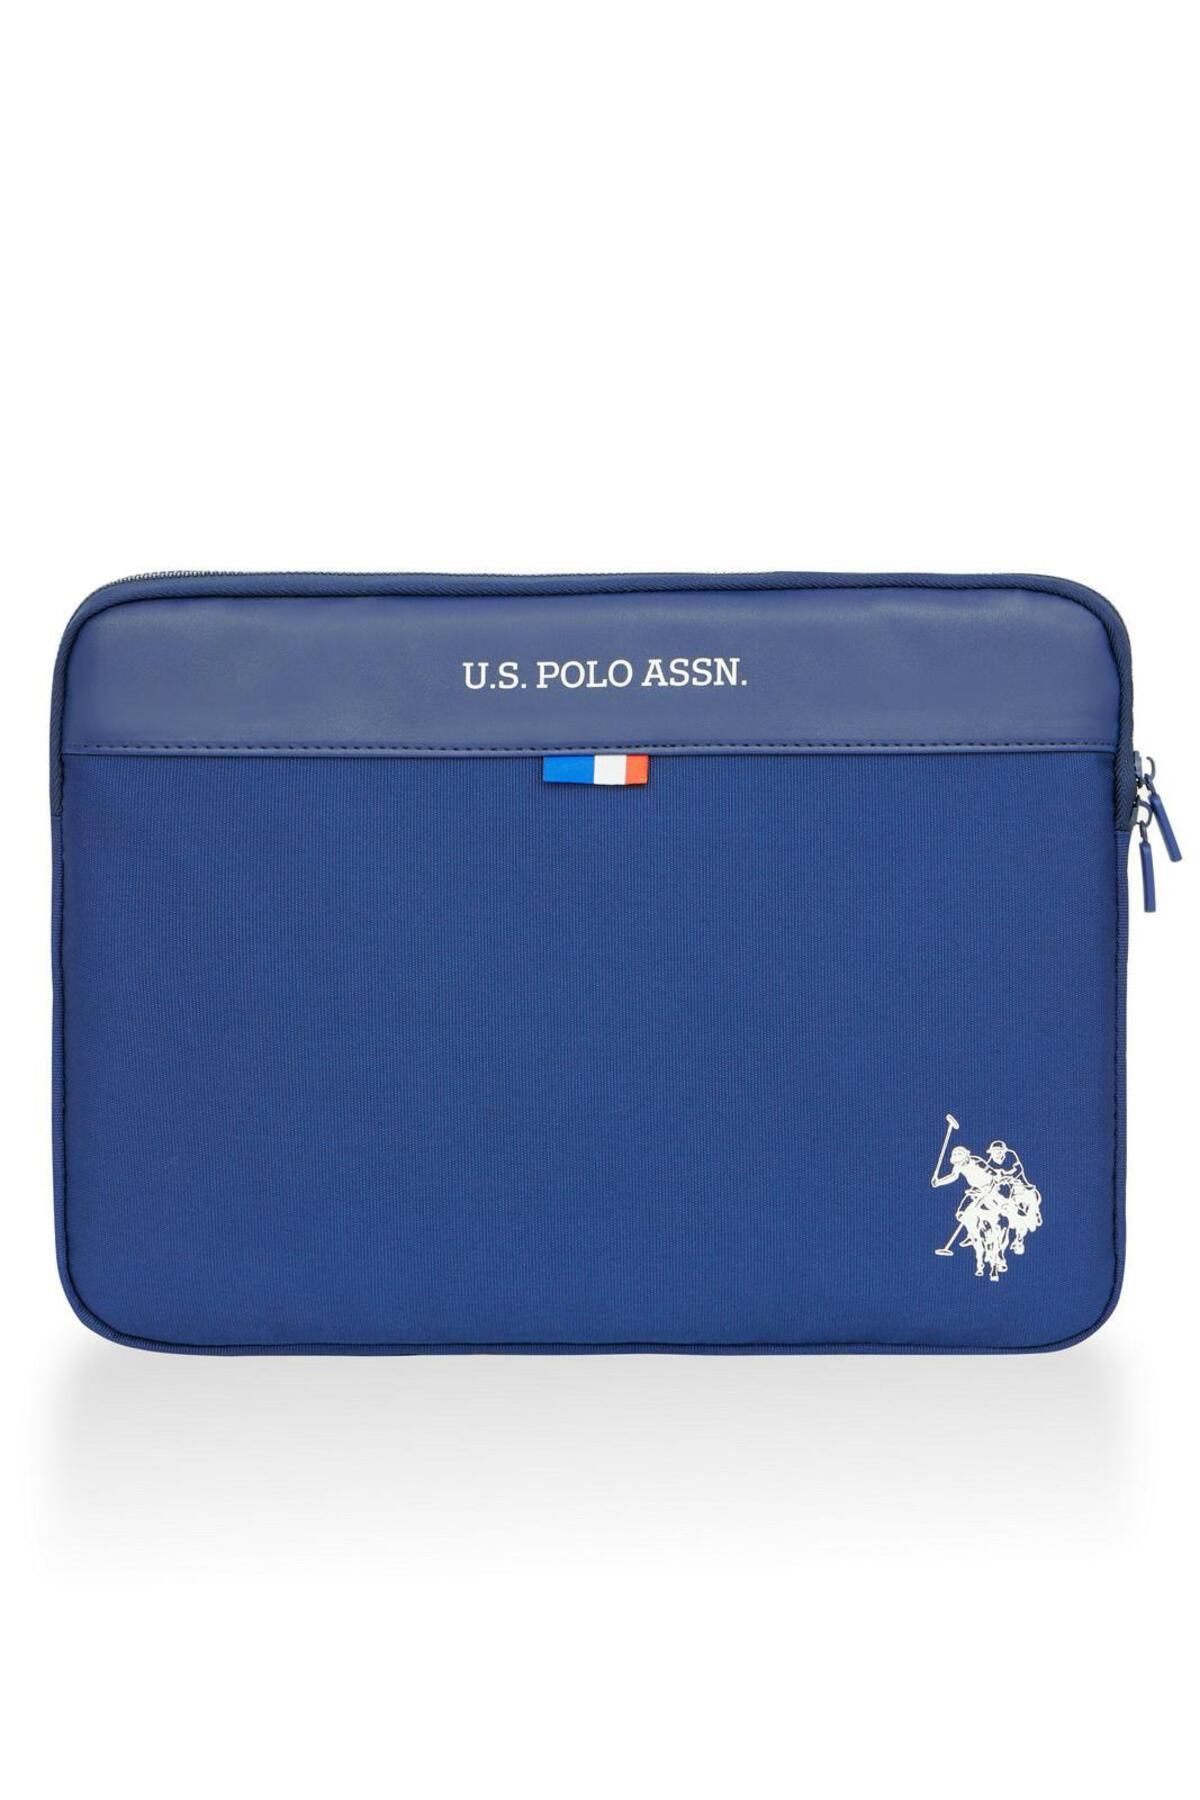 U.S. Polo Assn. Laptop Ve Evrak Çantası Plevr237009899